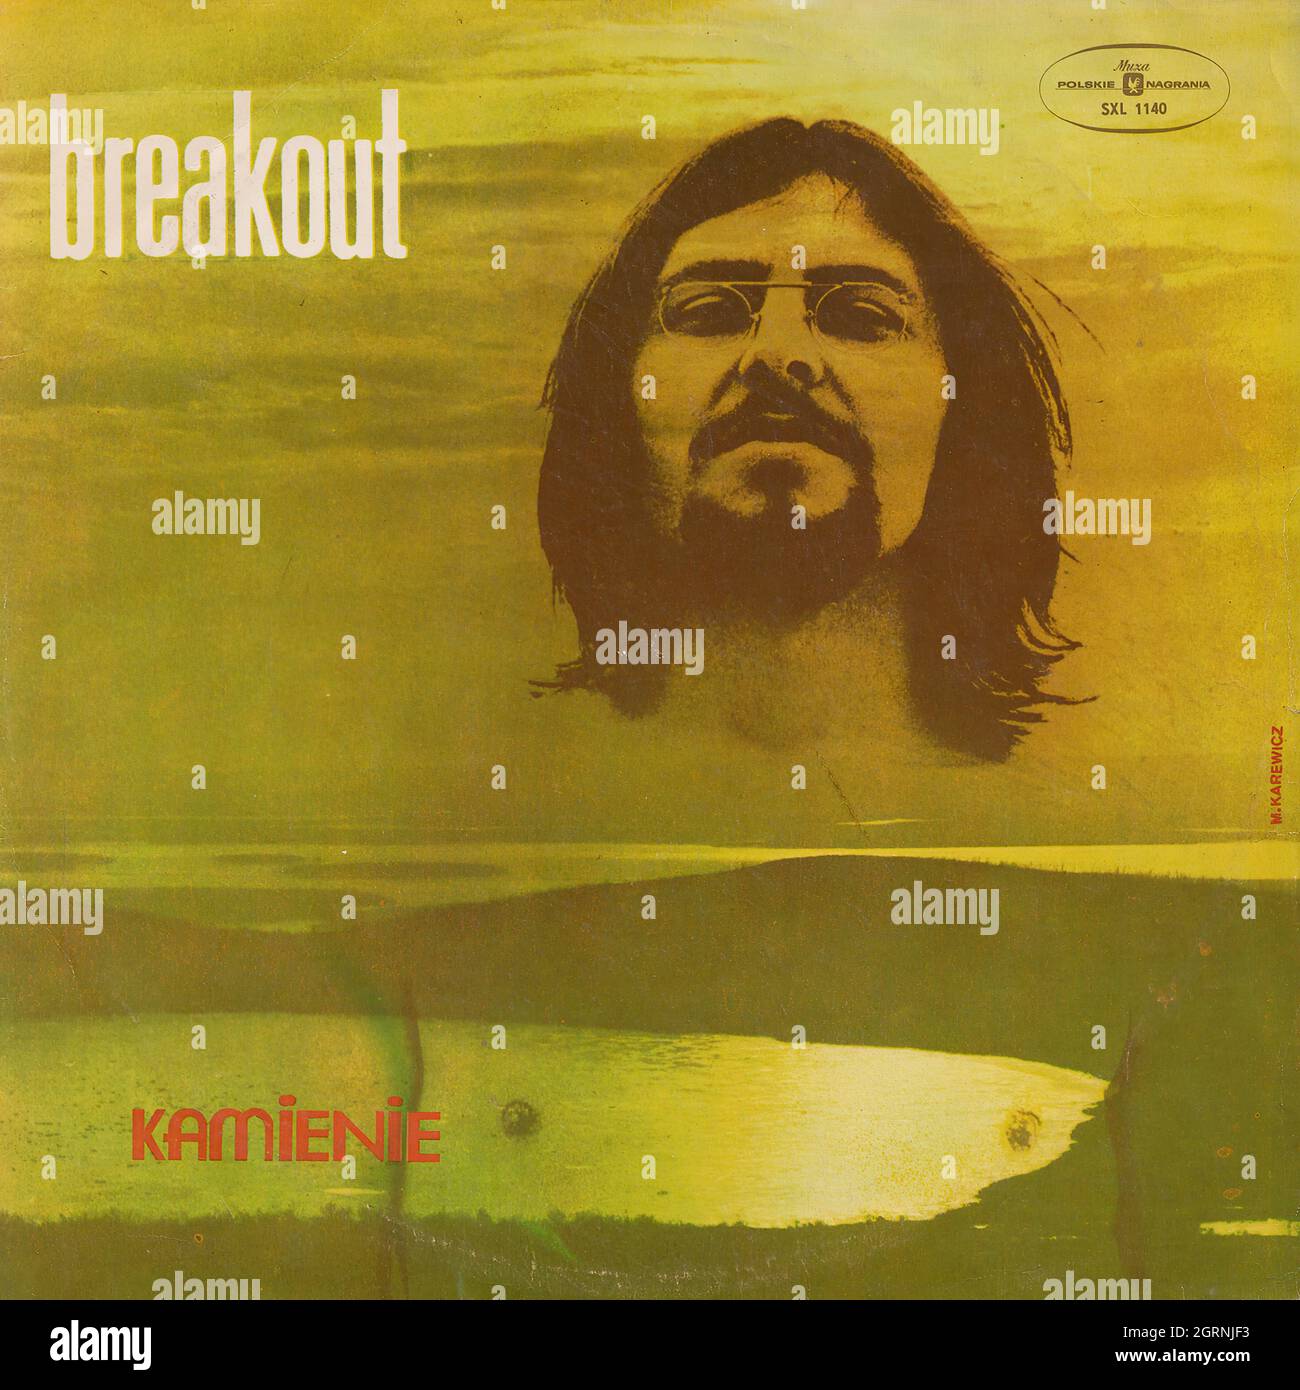 Breakout - Kamienie - Vintage Vinyl Record Cover Banque D'Images